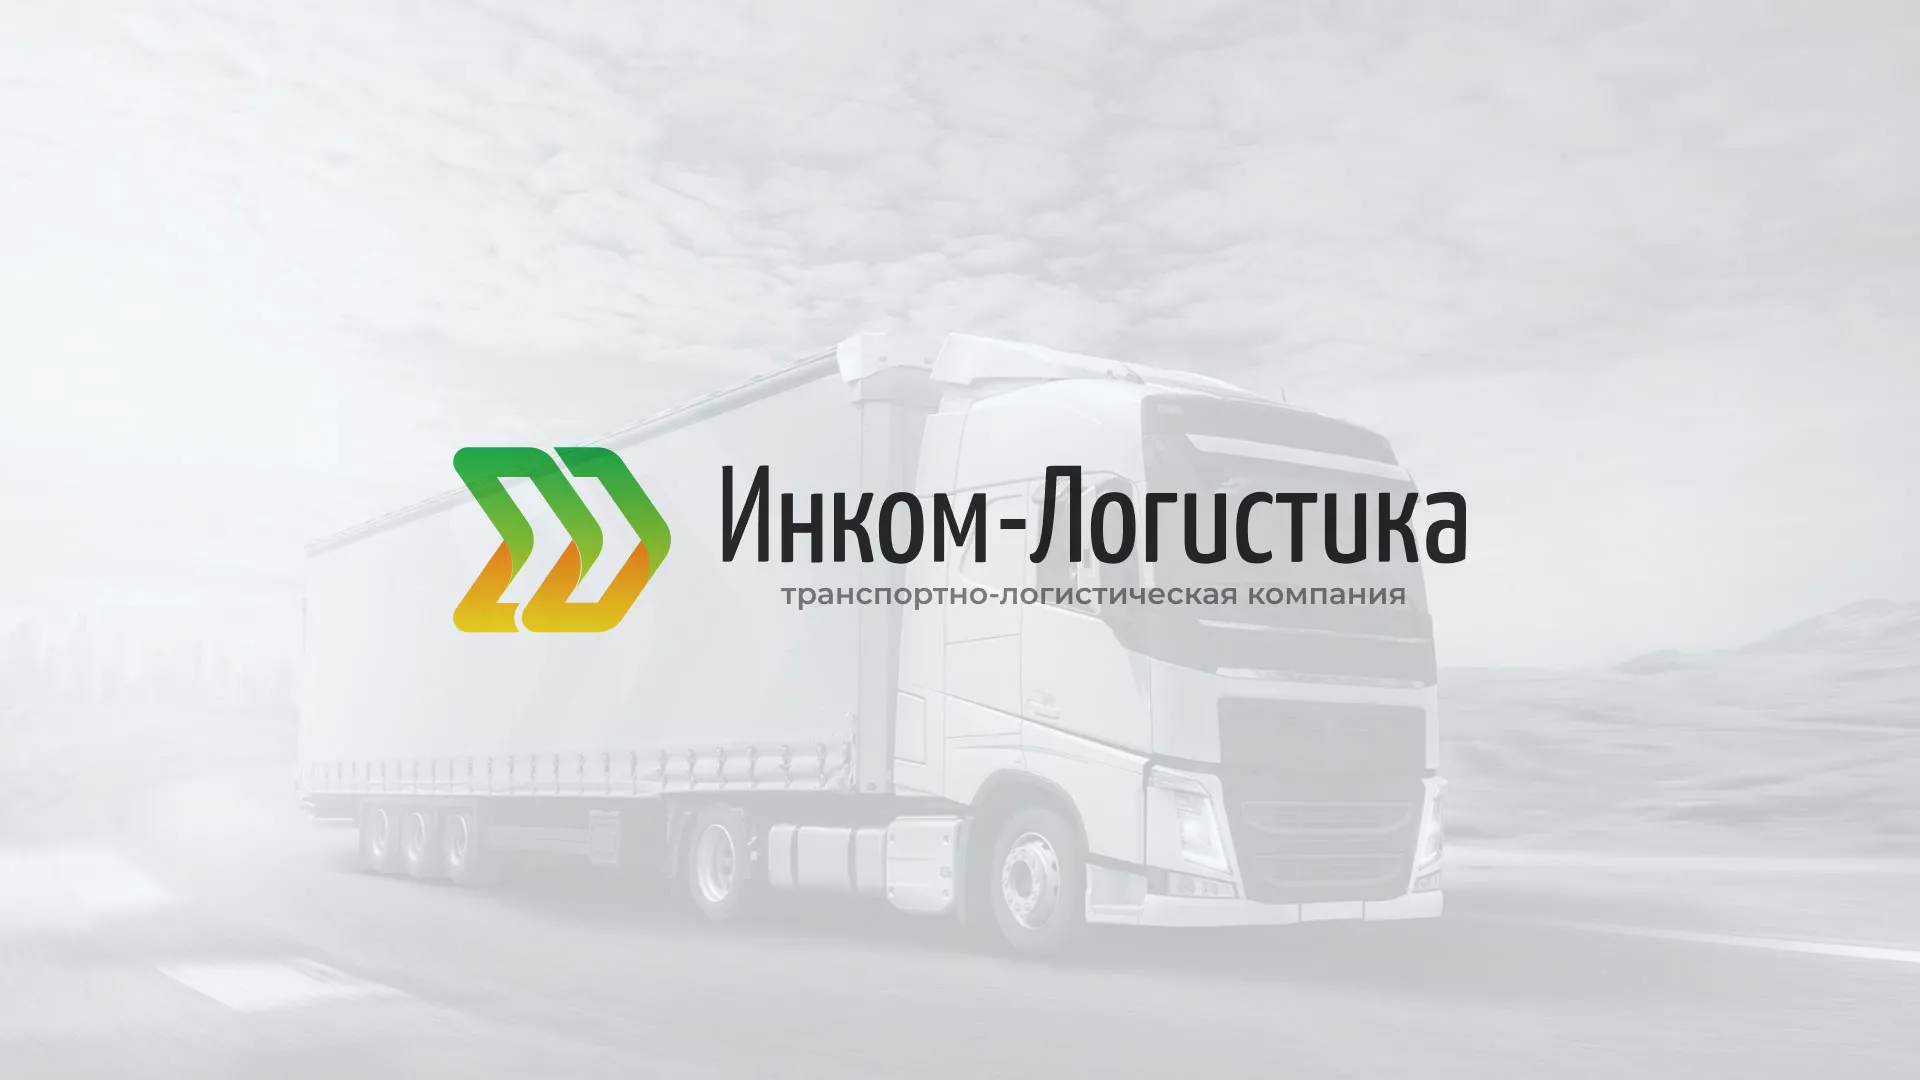 Разработка логотипа и сайта компании «Инком-Логистика» в Павлово